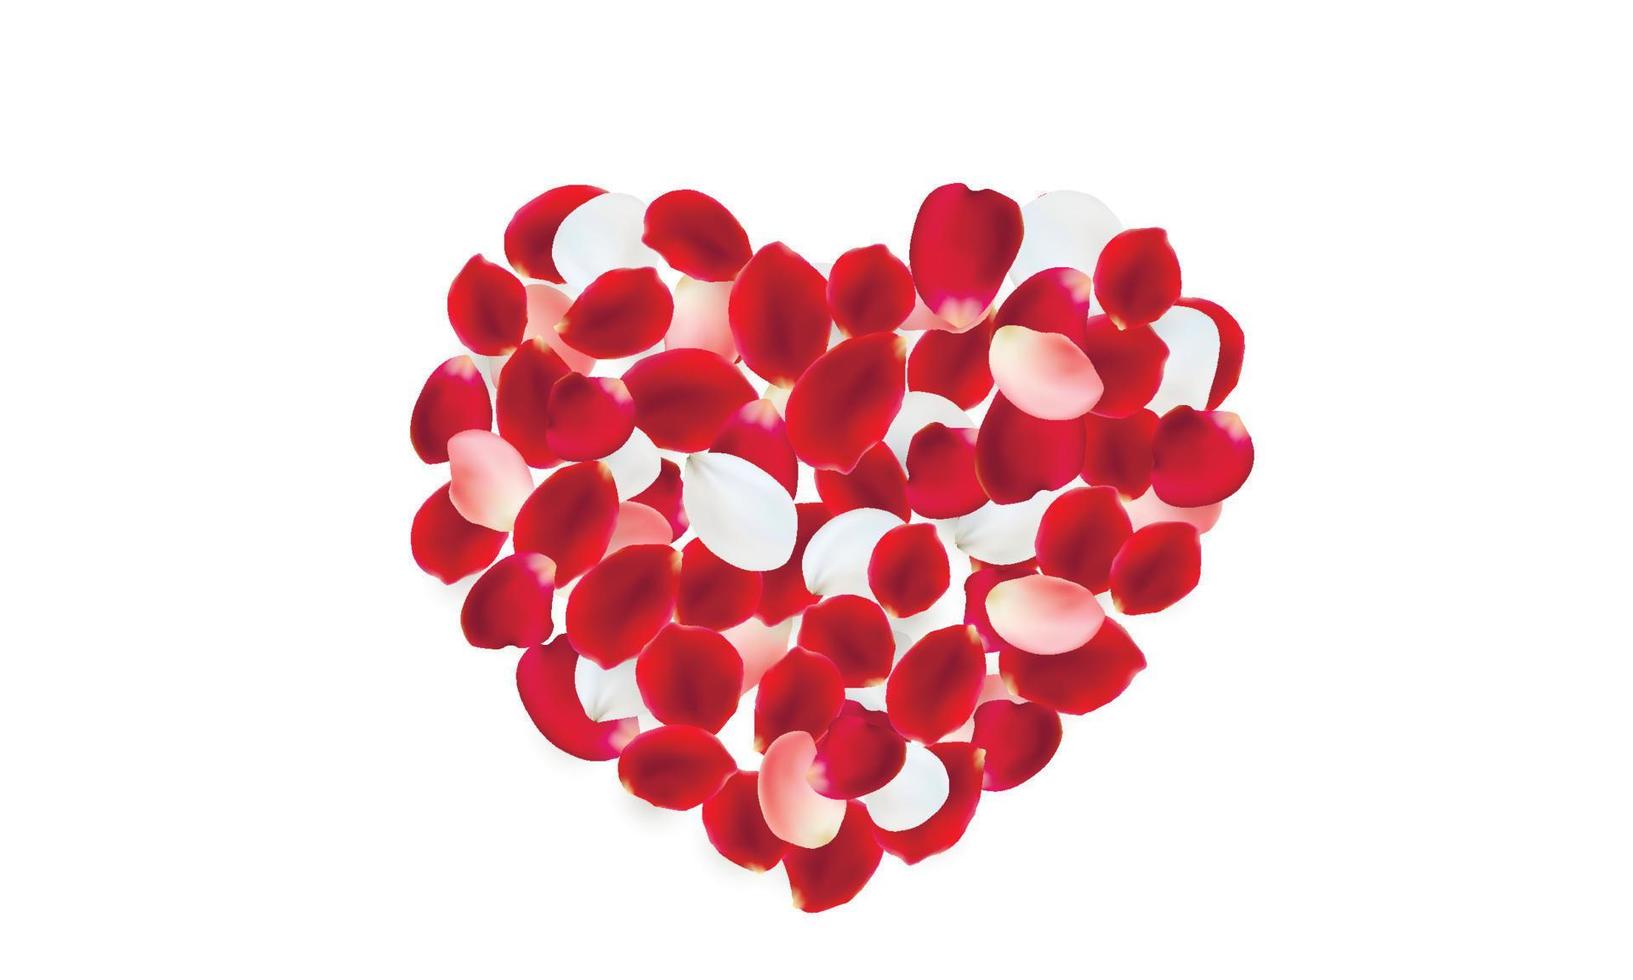 coração feito de pétalas de rosa vermelhas, rosa e brancas. vetor